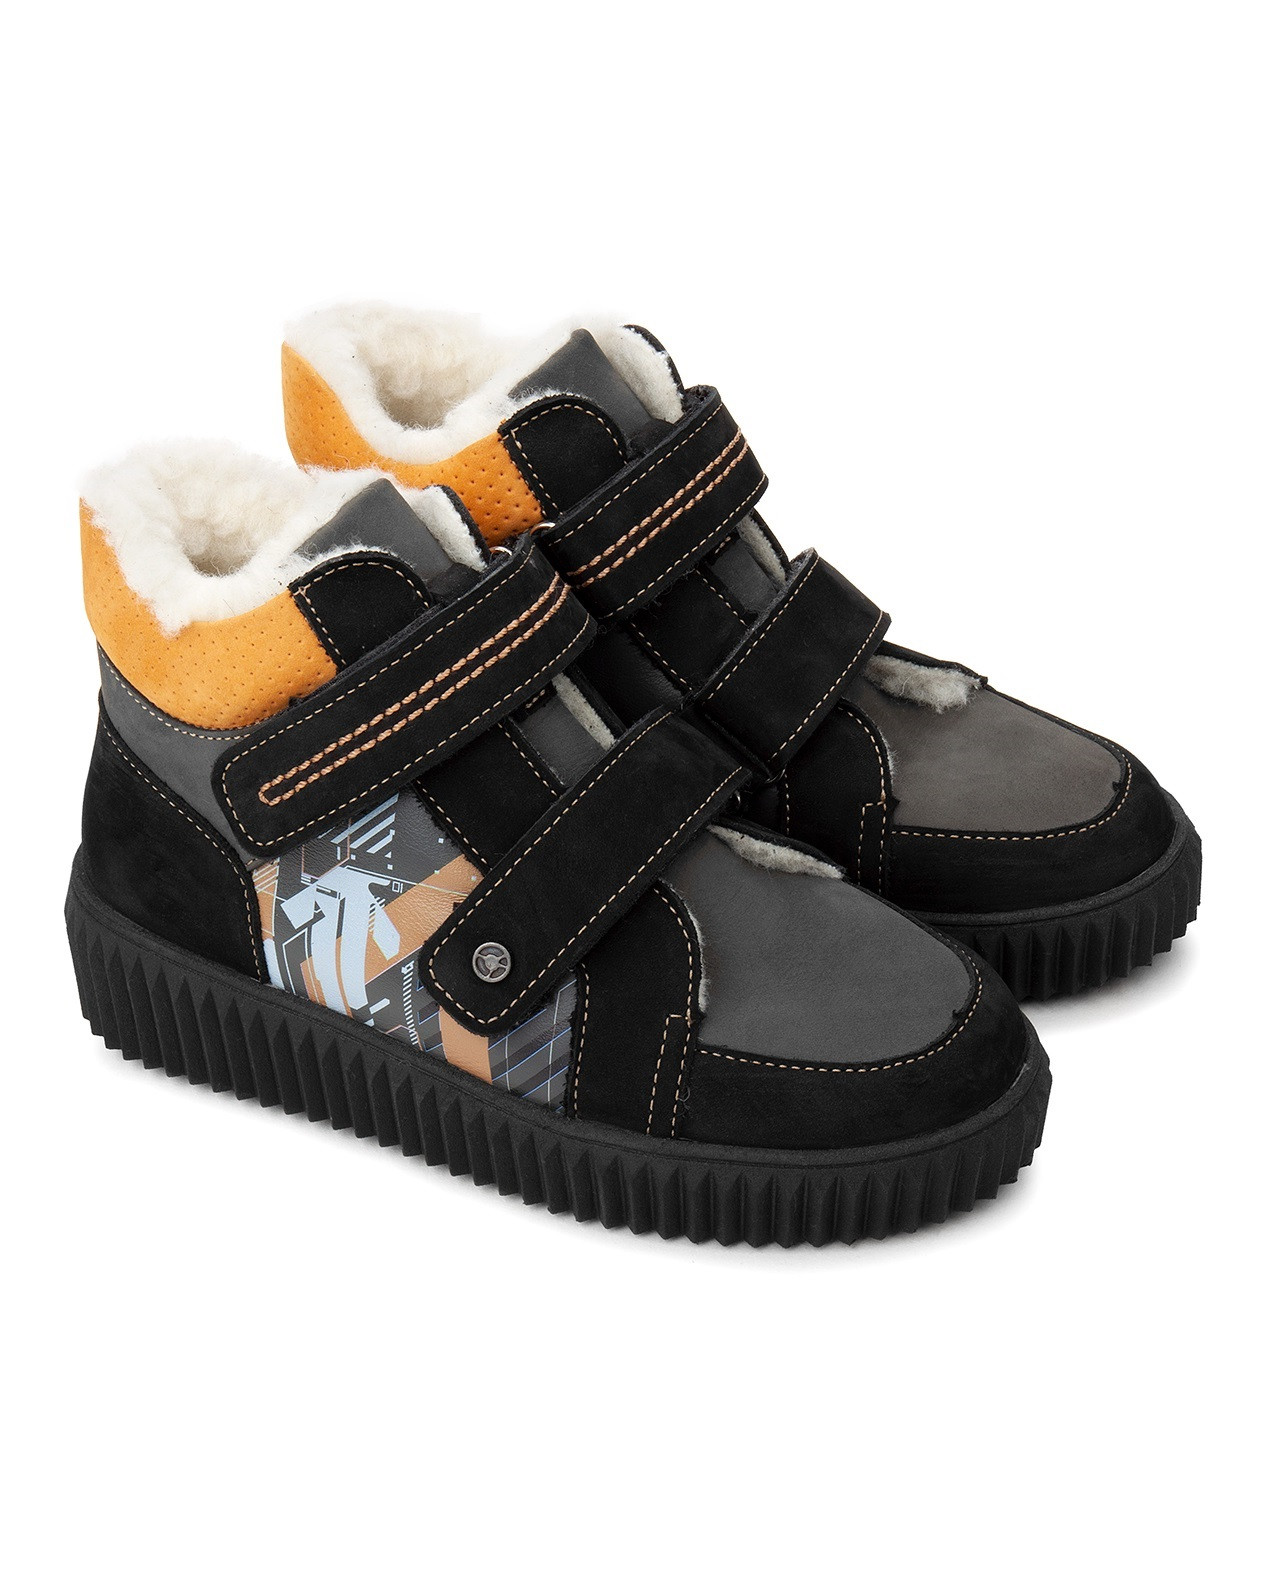 Ботинки детские Tapiboo КАИР терракот/принт-схема (80908, 33) ботинки детские tapiboo исландия 74265 33